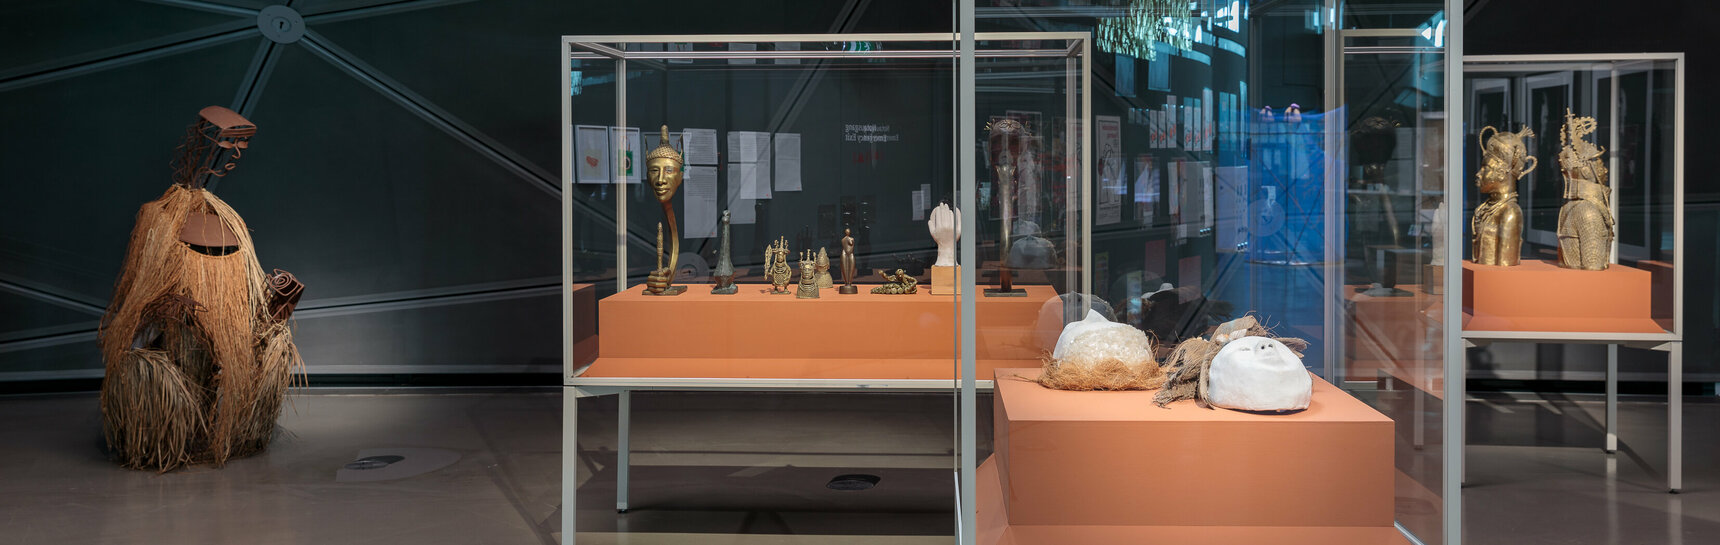 Ausstellungsansicht im Kunsthaus Graz. Mehrere Vitrinen mit den Bronzeskulpturen und Masken vom Künstler Samson Ogiamien sind groß im Bild zu sehen.